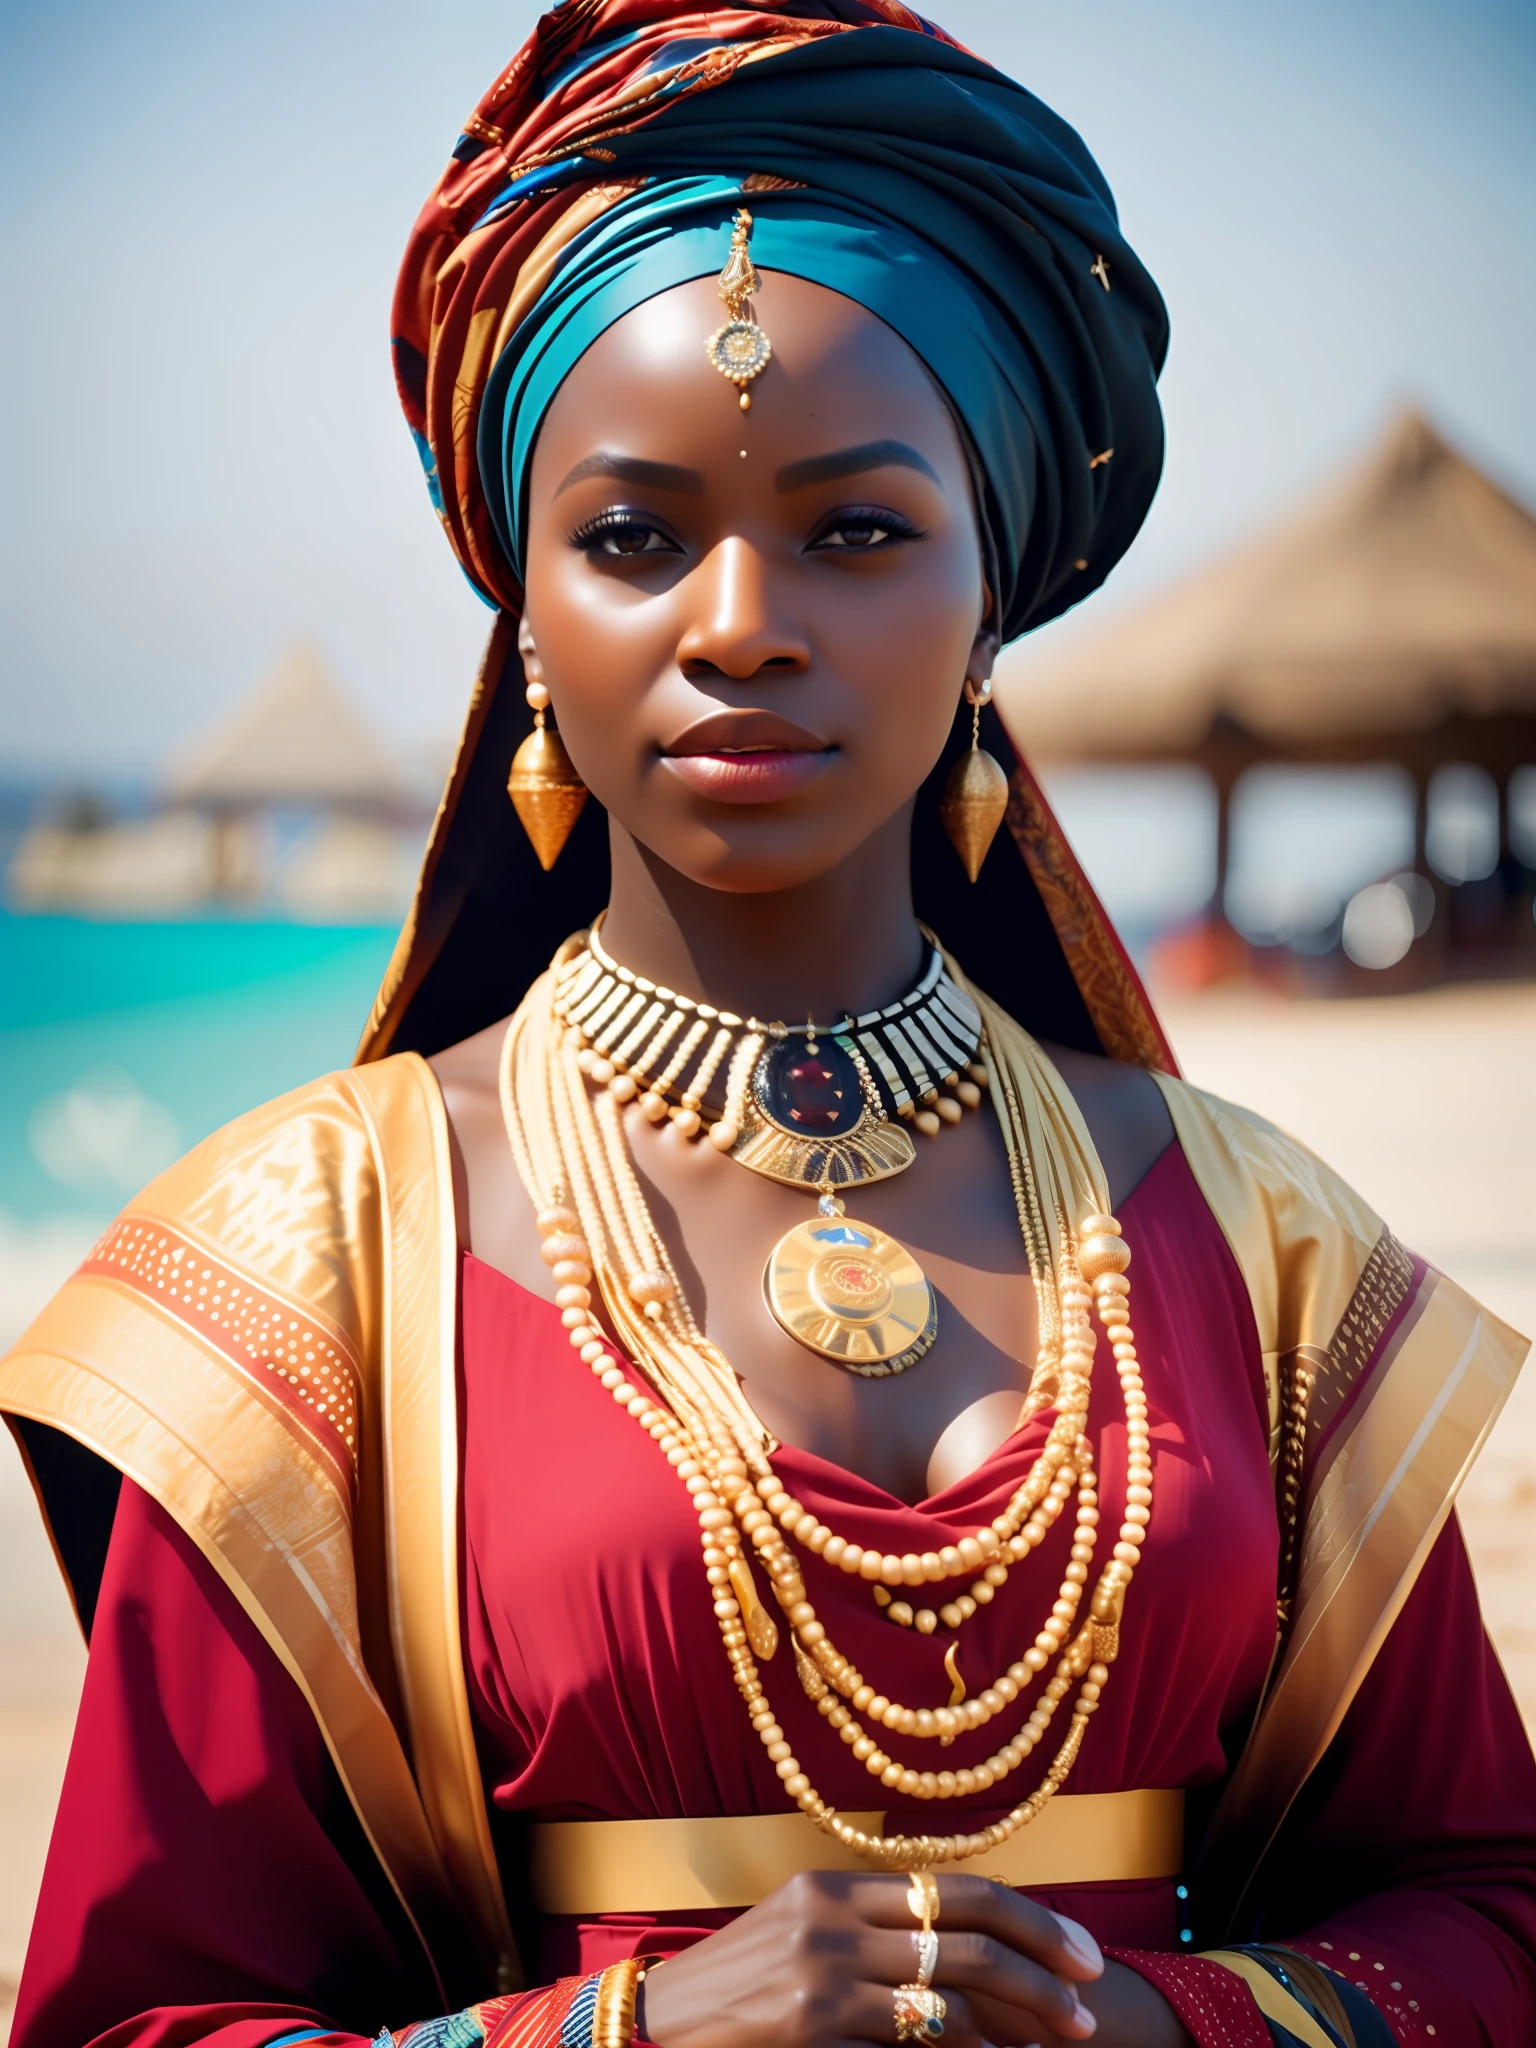 verdammt_Science-Fiction, verdammt_Science-Fiction_v2, Porträt einer jungen, sehr schönen Afrikanerin, vor einem Strand, reiche bunte Kleidung, Turban und goldener afrikanischer Schmuck, Nahaufnahme, königliche Pose und Haltung. verdammt_Kino_v2. verdammt_Kino_v2